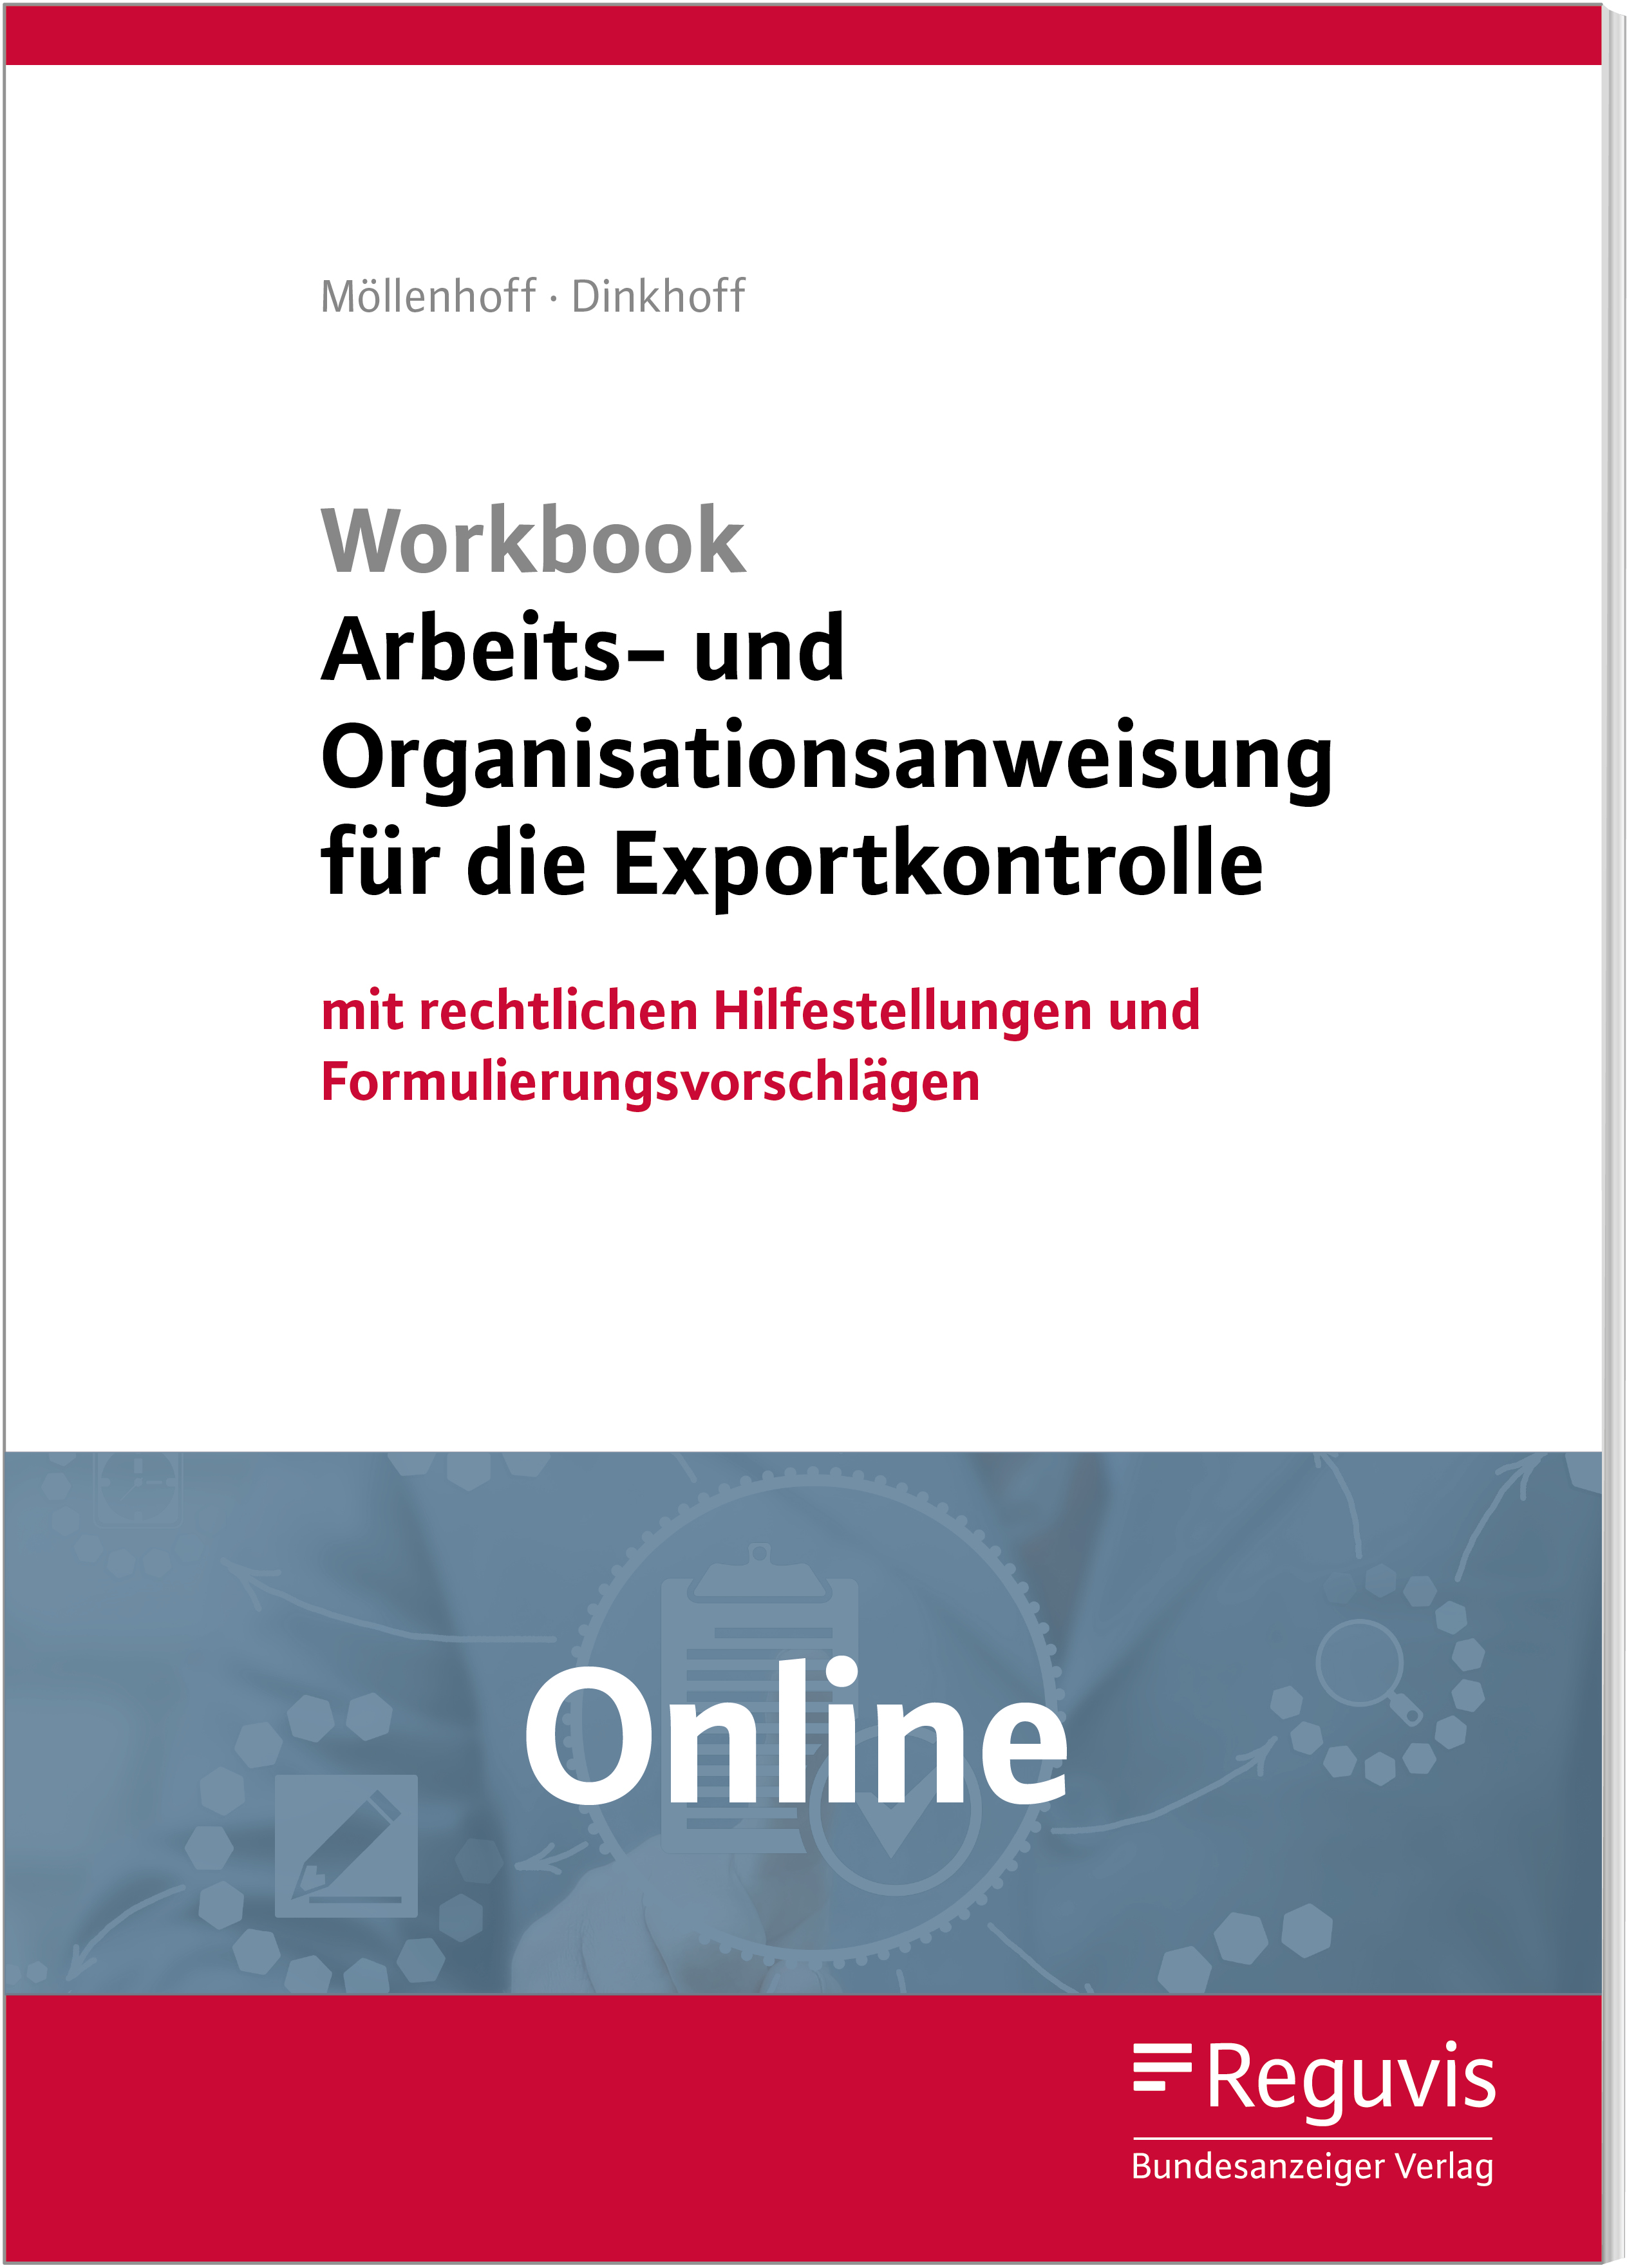 Workbook Arbeits- und Organisationsanweisung für die Exportkontrolle - Online